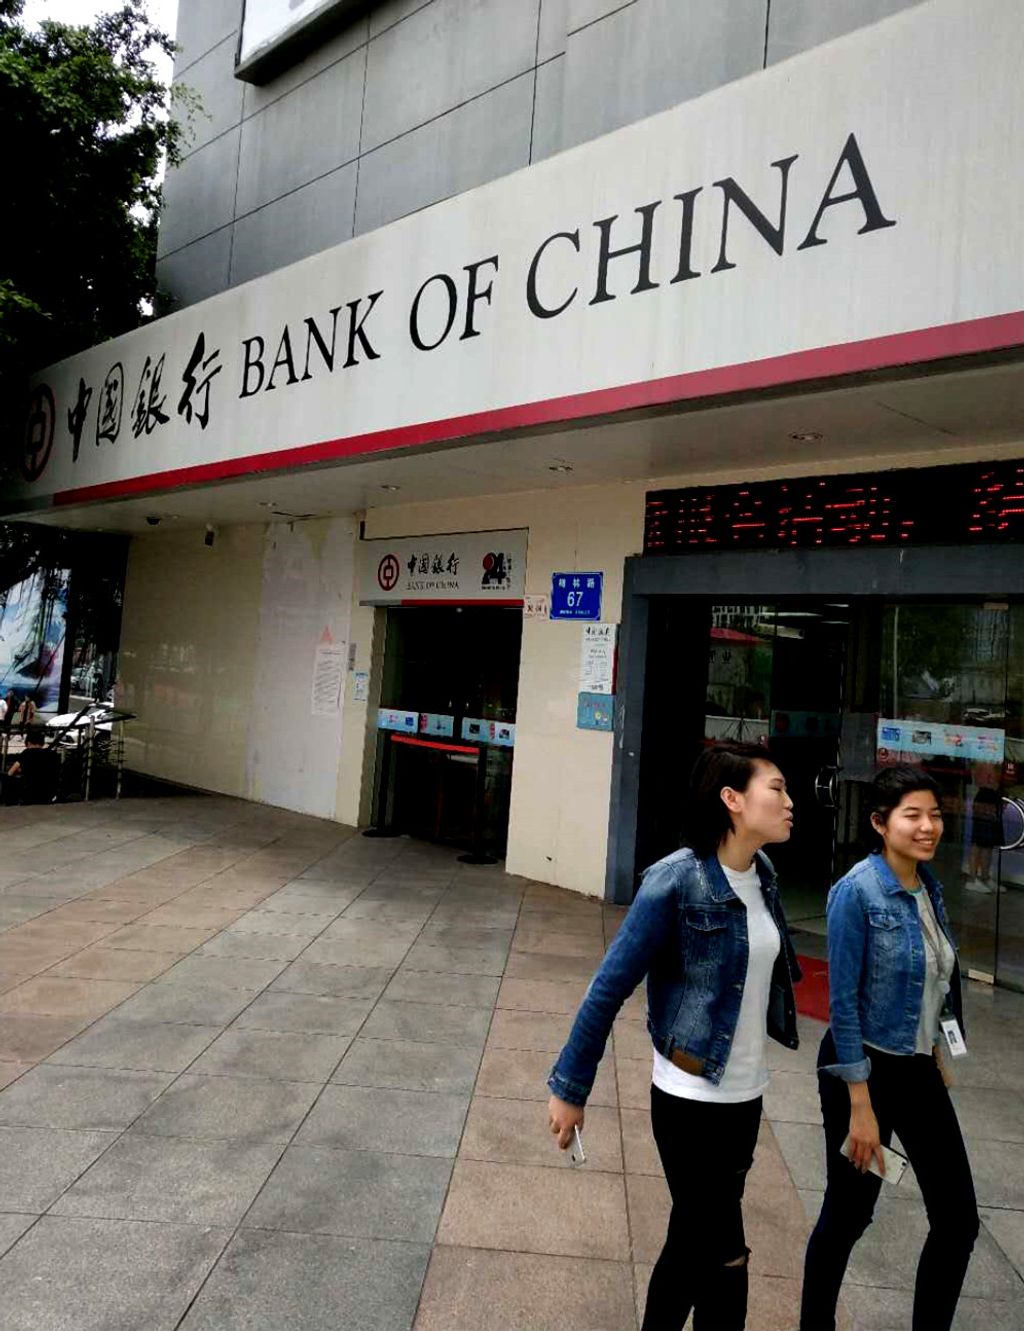 Ez a világ 15 legerősebb bankja – galéria, Bank of China 